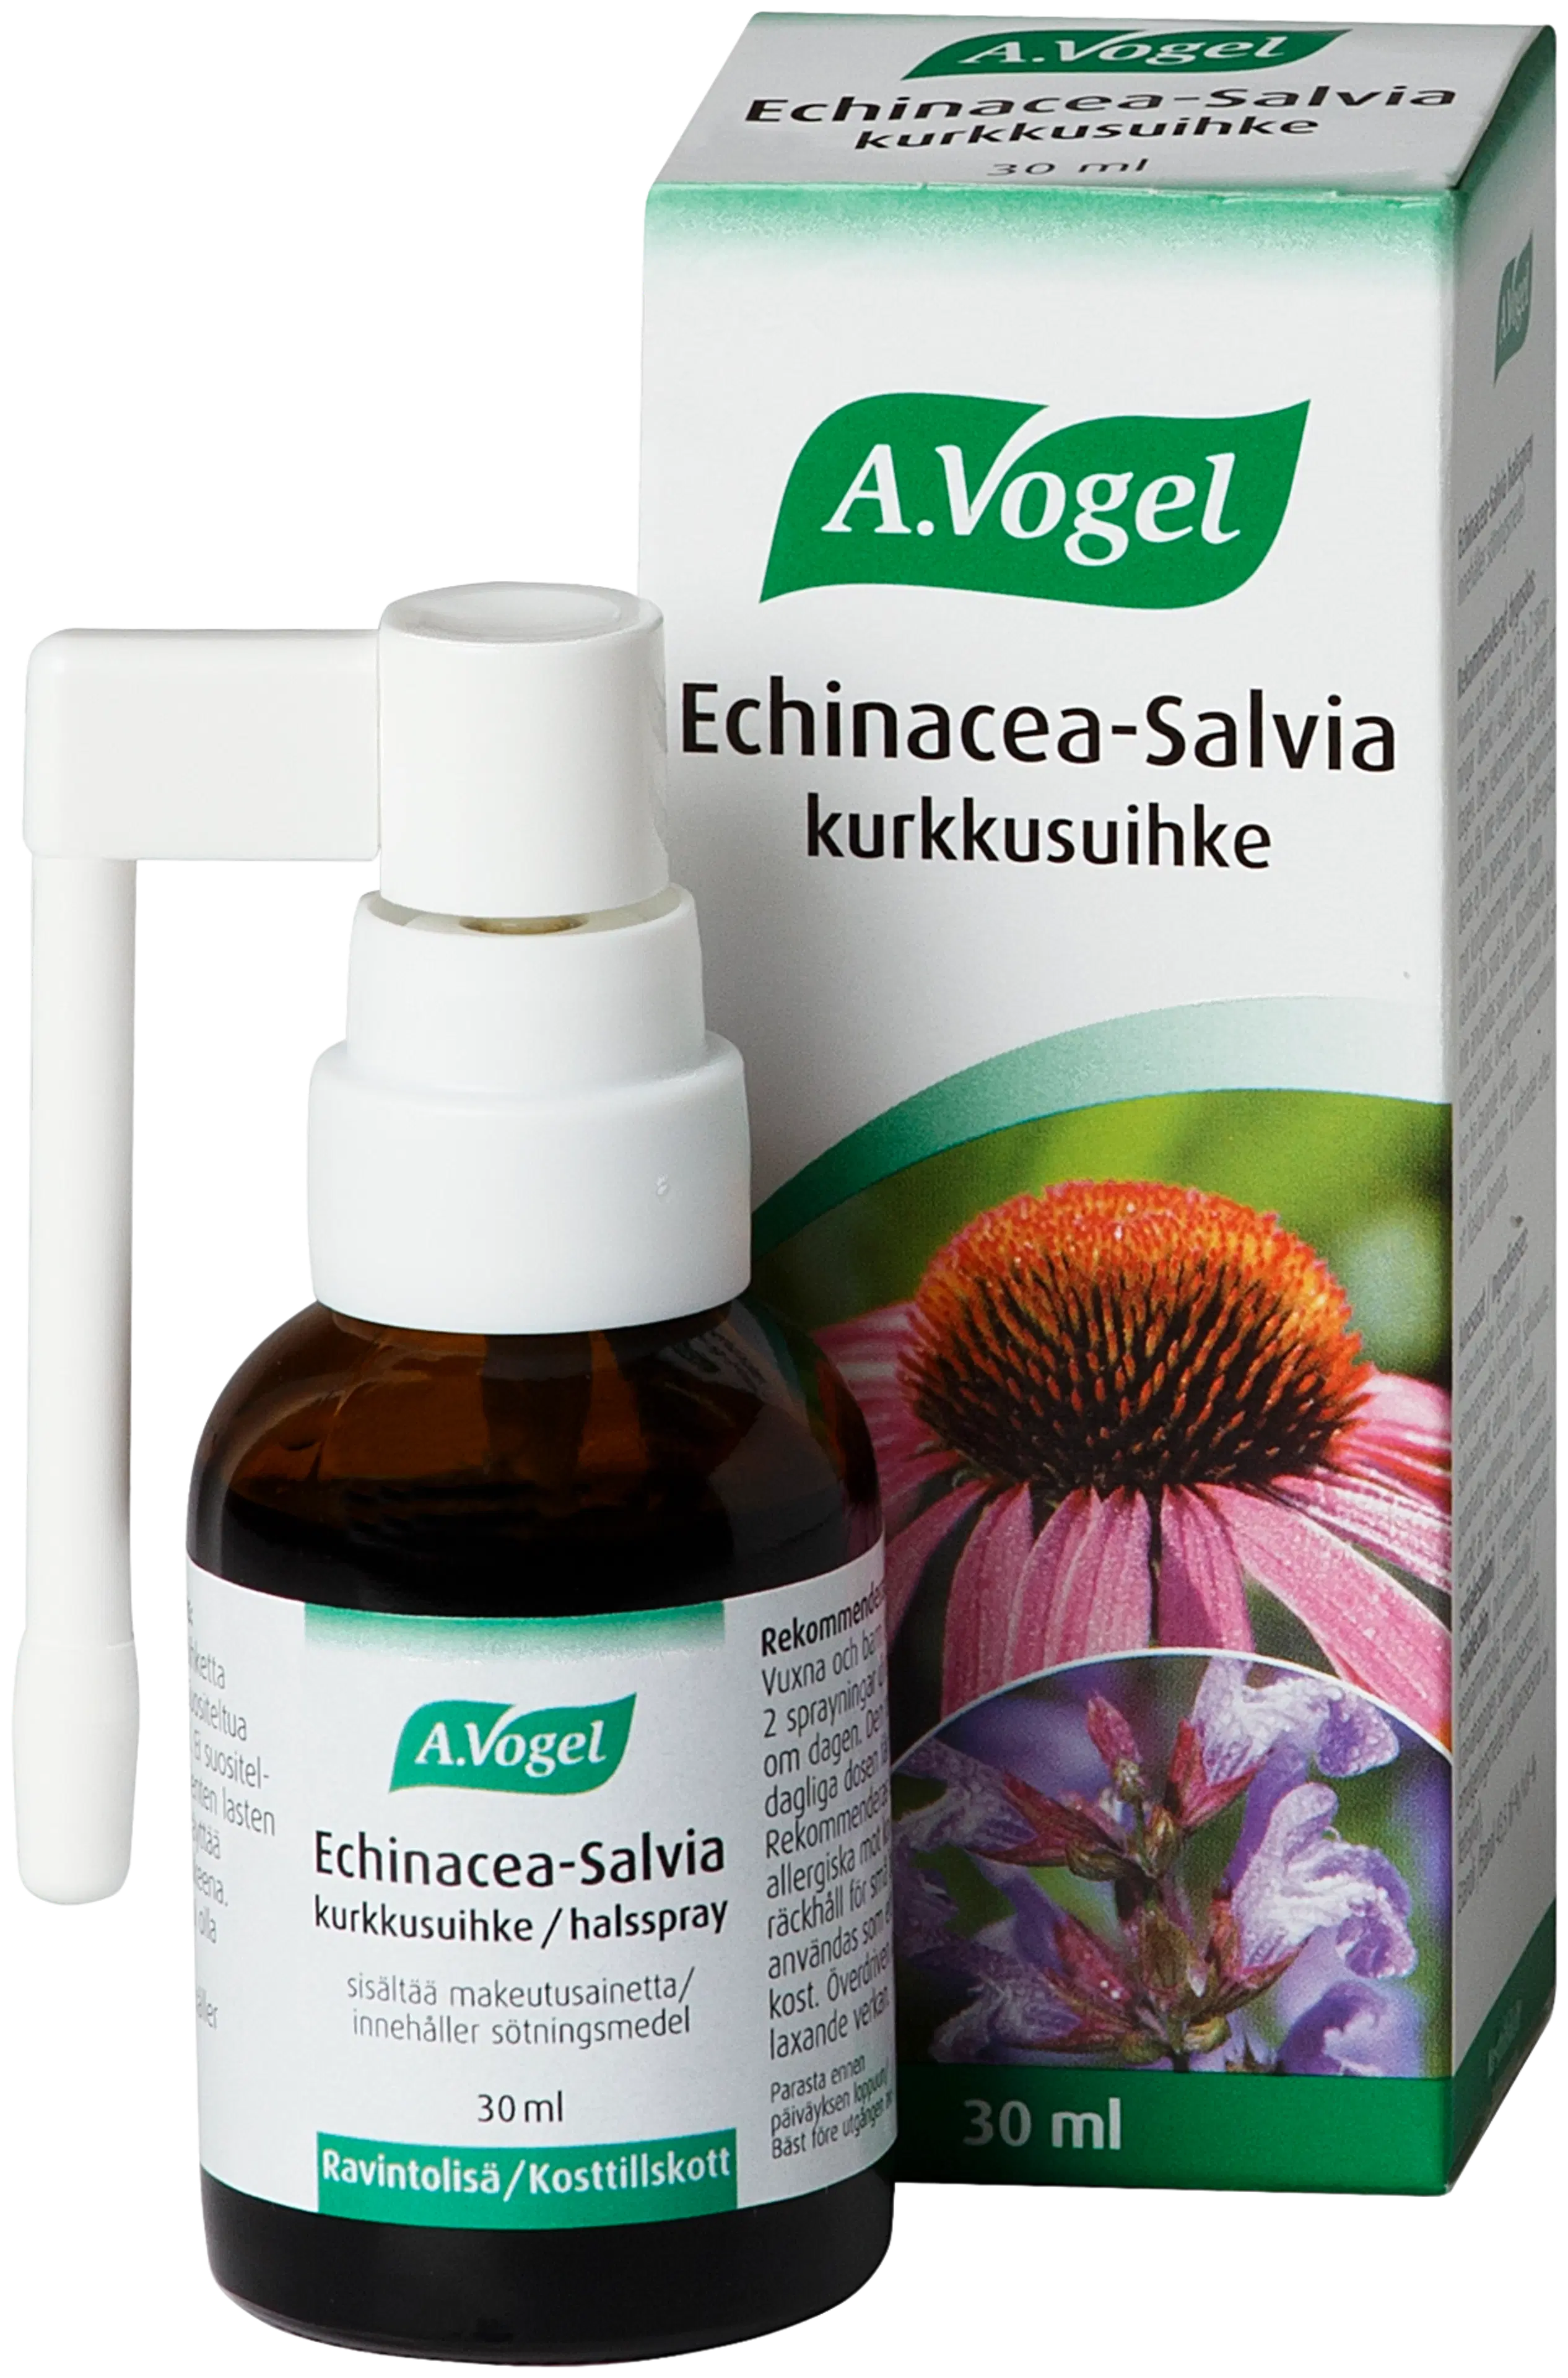 A.Vogel Echinacea-Salvia kurkkusuihke 30 ml